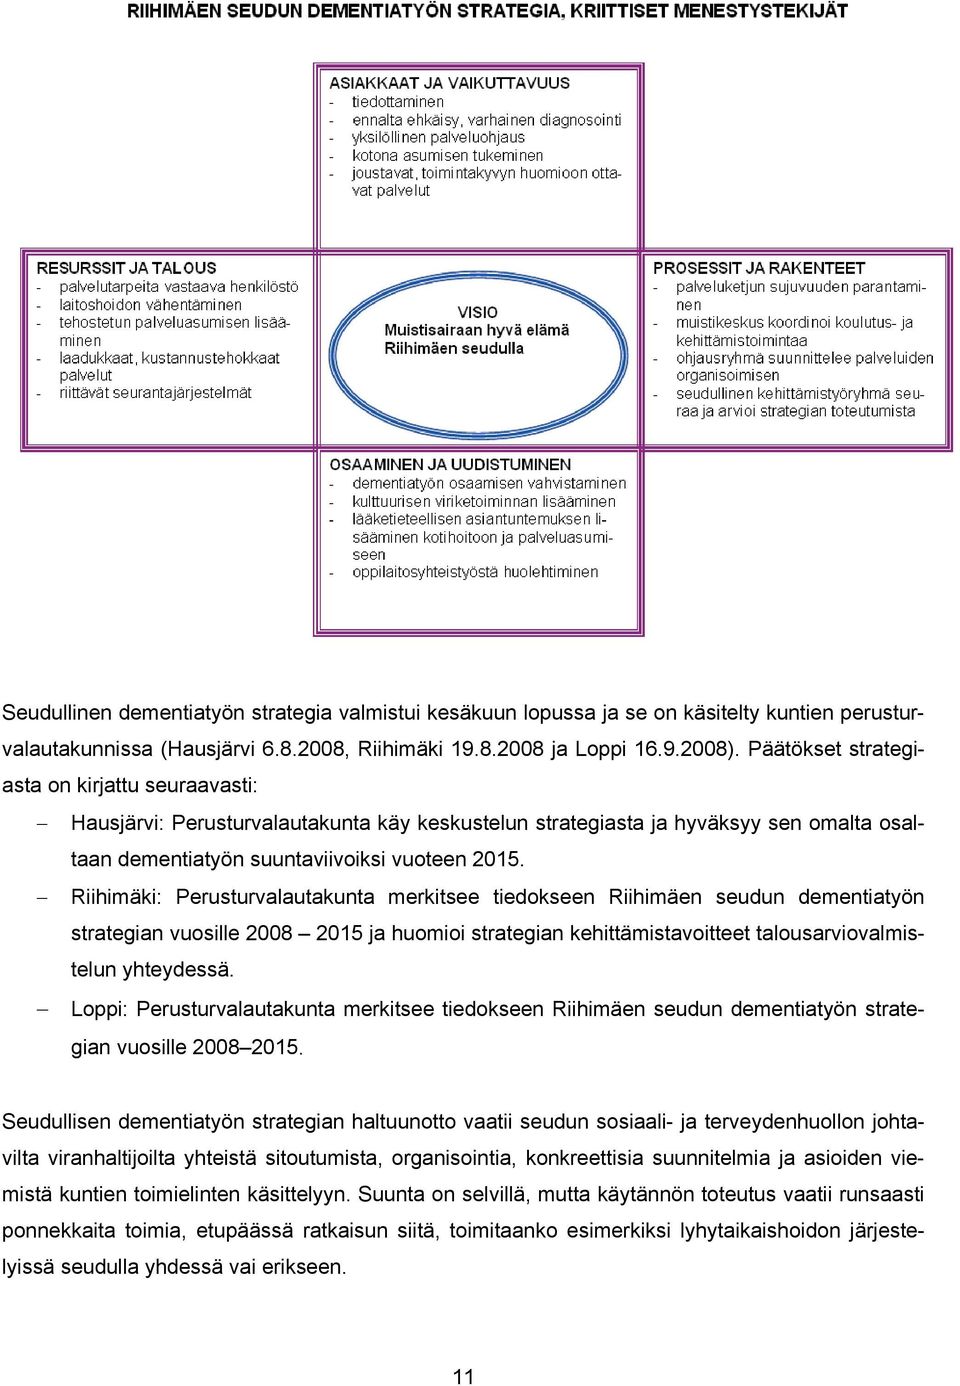 Riihimäki: Perusturvalautakunta merkitsee tiedokseen Riihimäen seudun dementiatyön strategian vuosille 2008 2015 ja huomioi strategian kehittämistavoitteet talousarviovalmistelun yhteydessä.